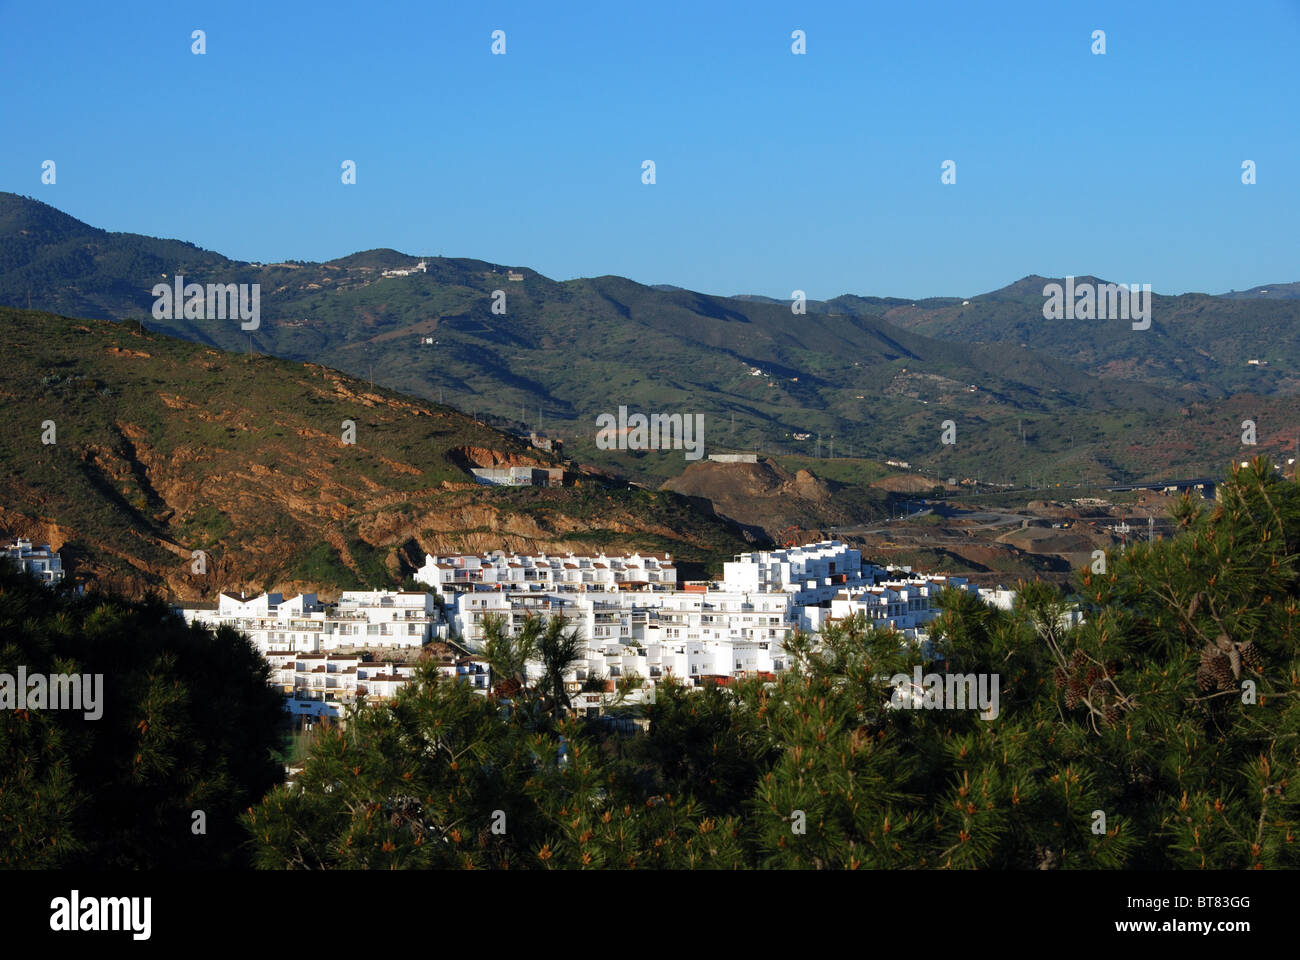 Apartments on the edge of the Montanas de Malaga, Malaga, Costa del Sol, Malaga Province, Andalucia, Spain, Western Europe. Stock Photo